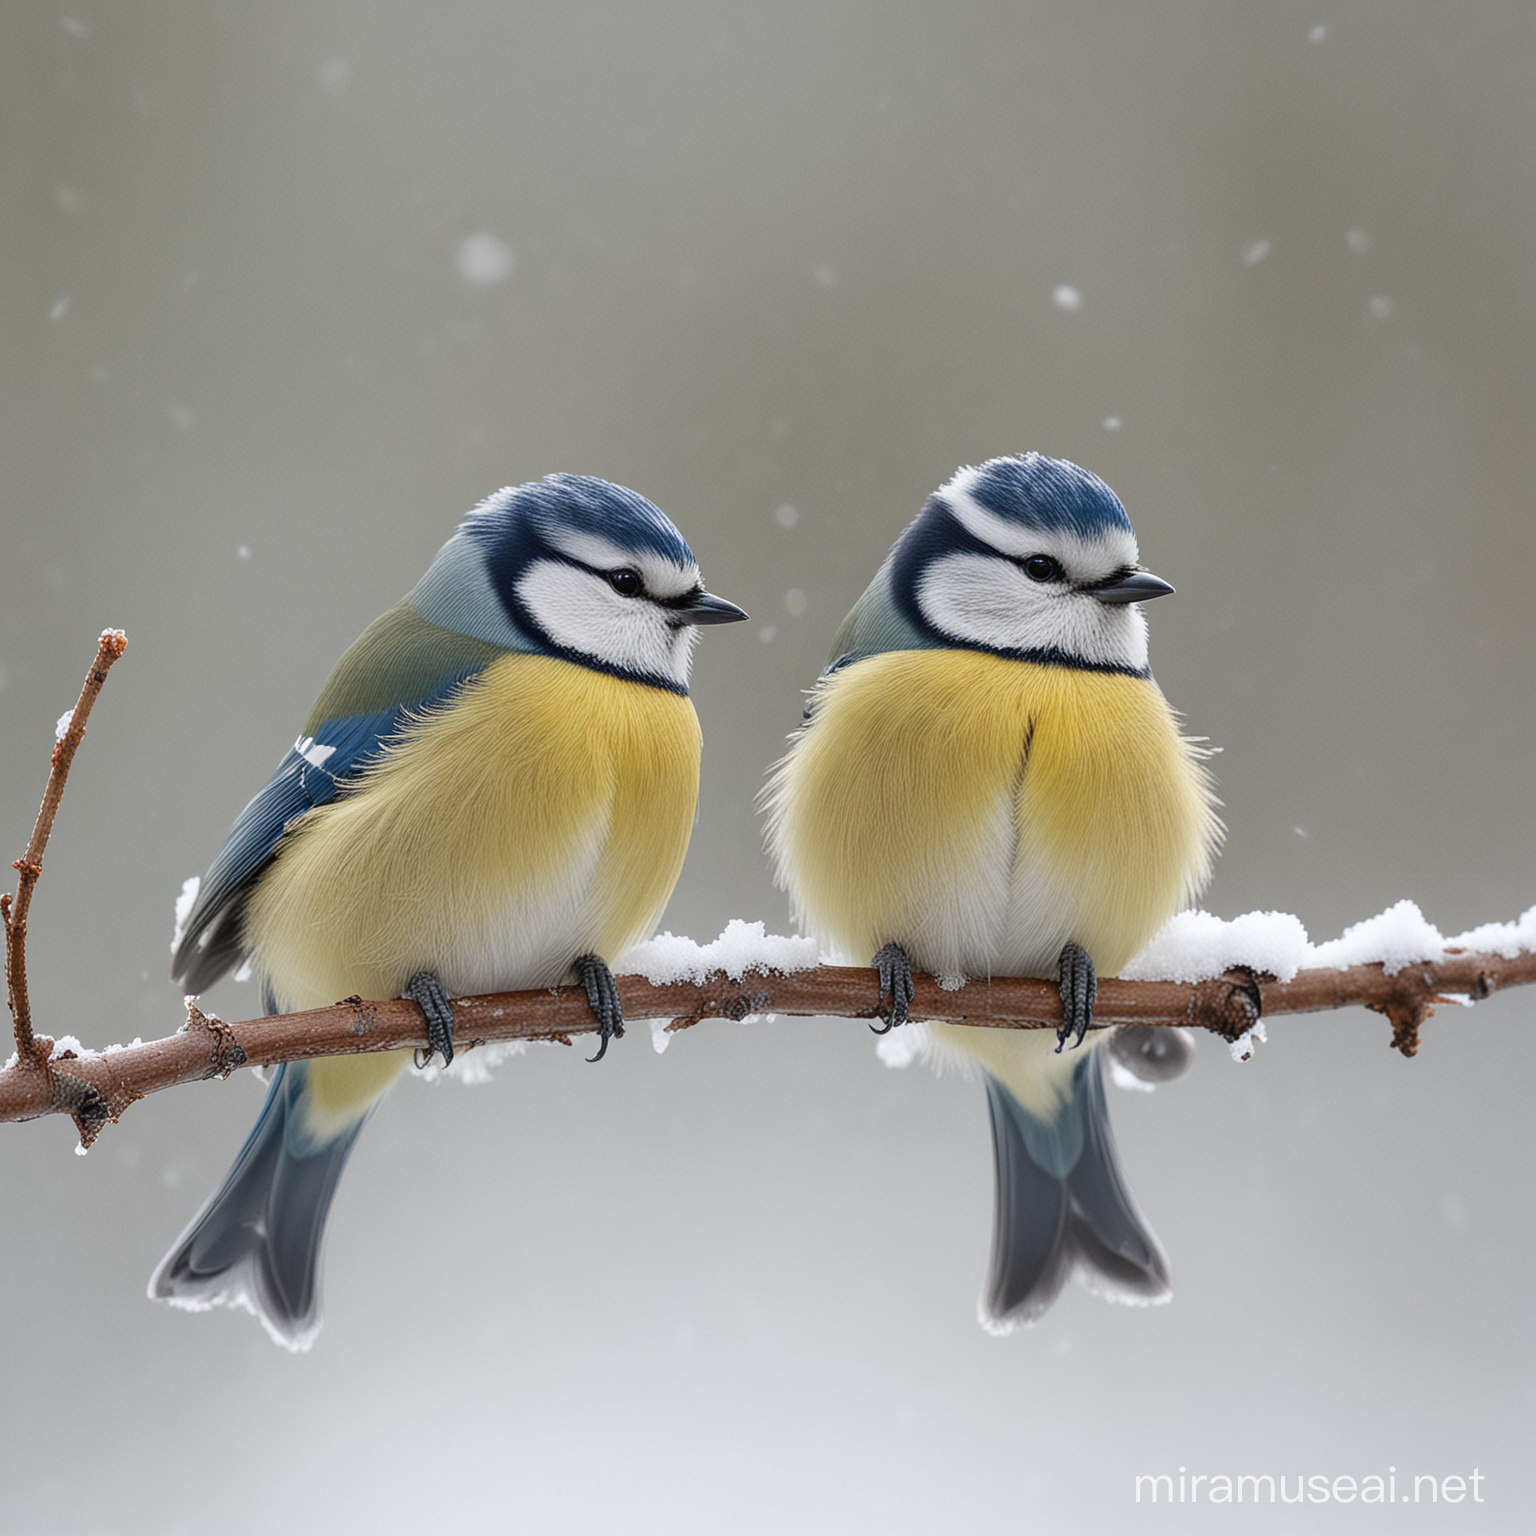 Kaksi sinitiaista lumisella oksalla
Suomen kevät
